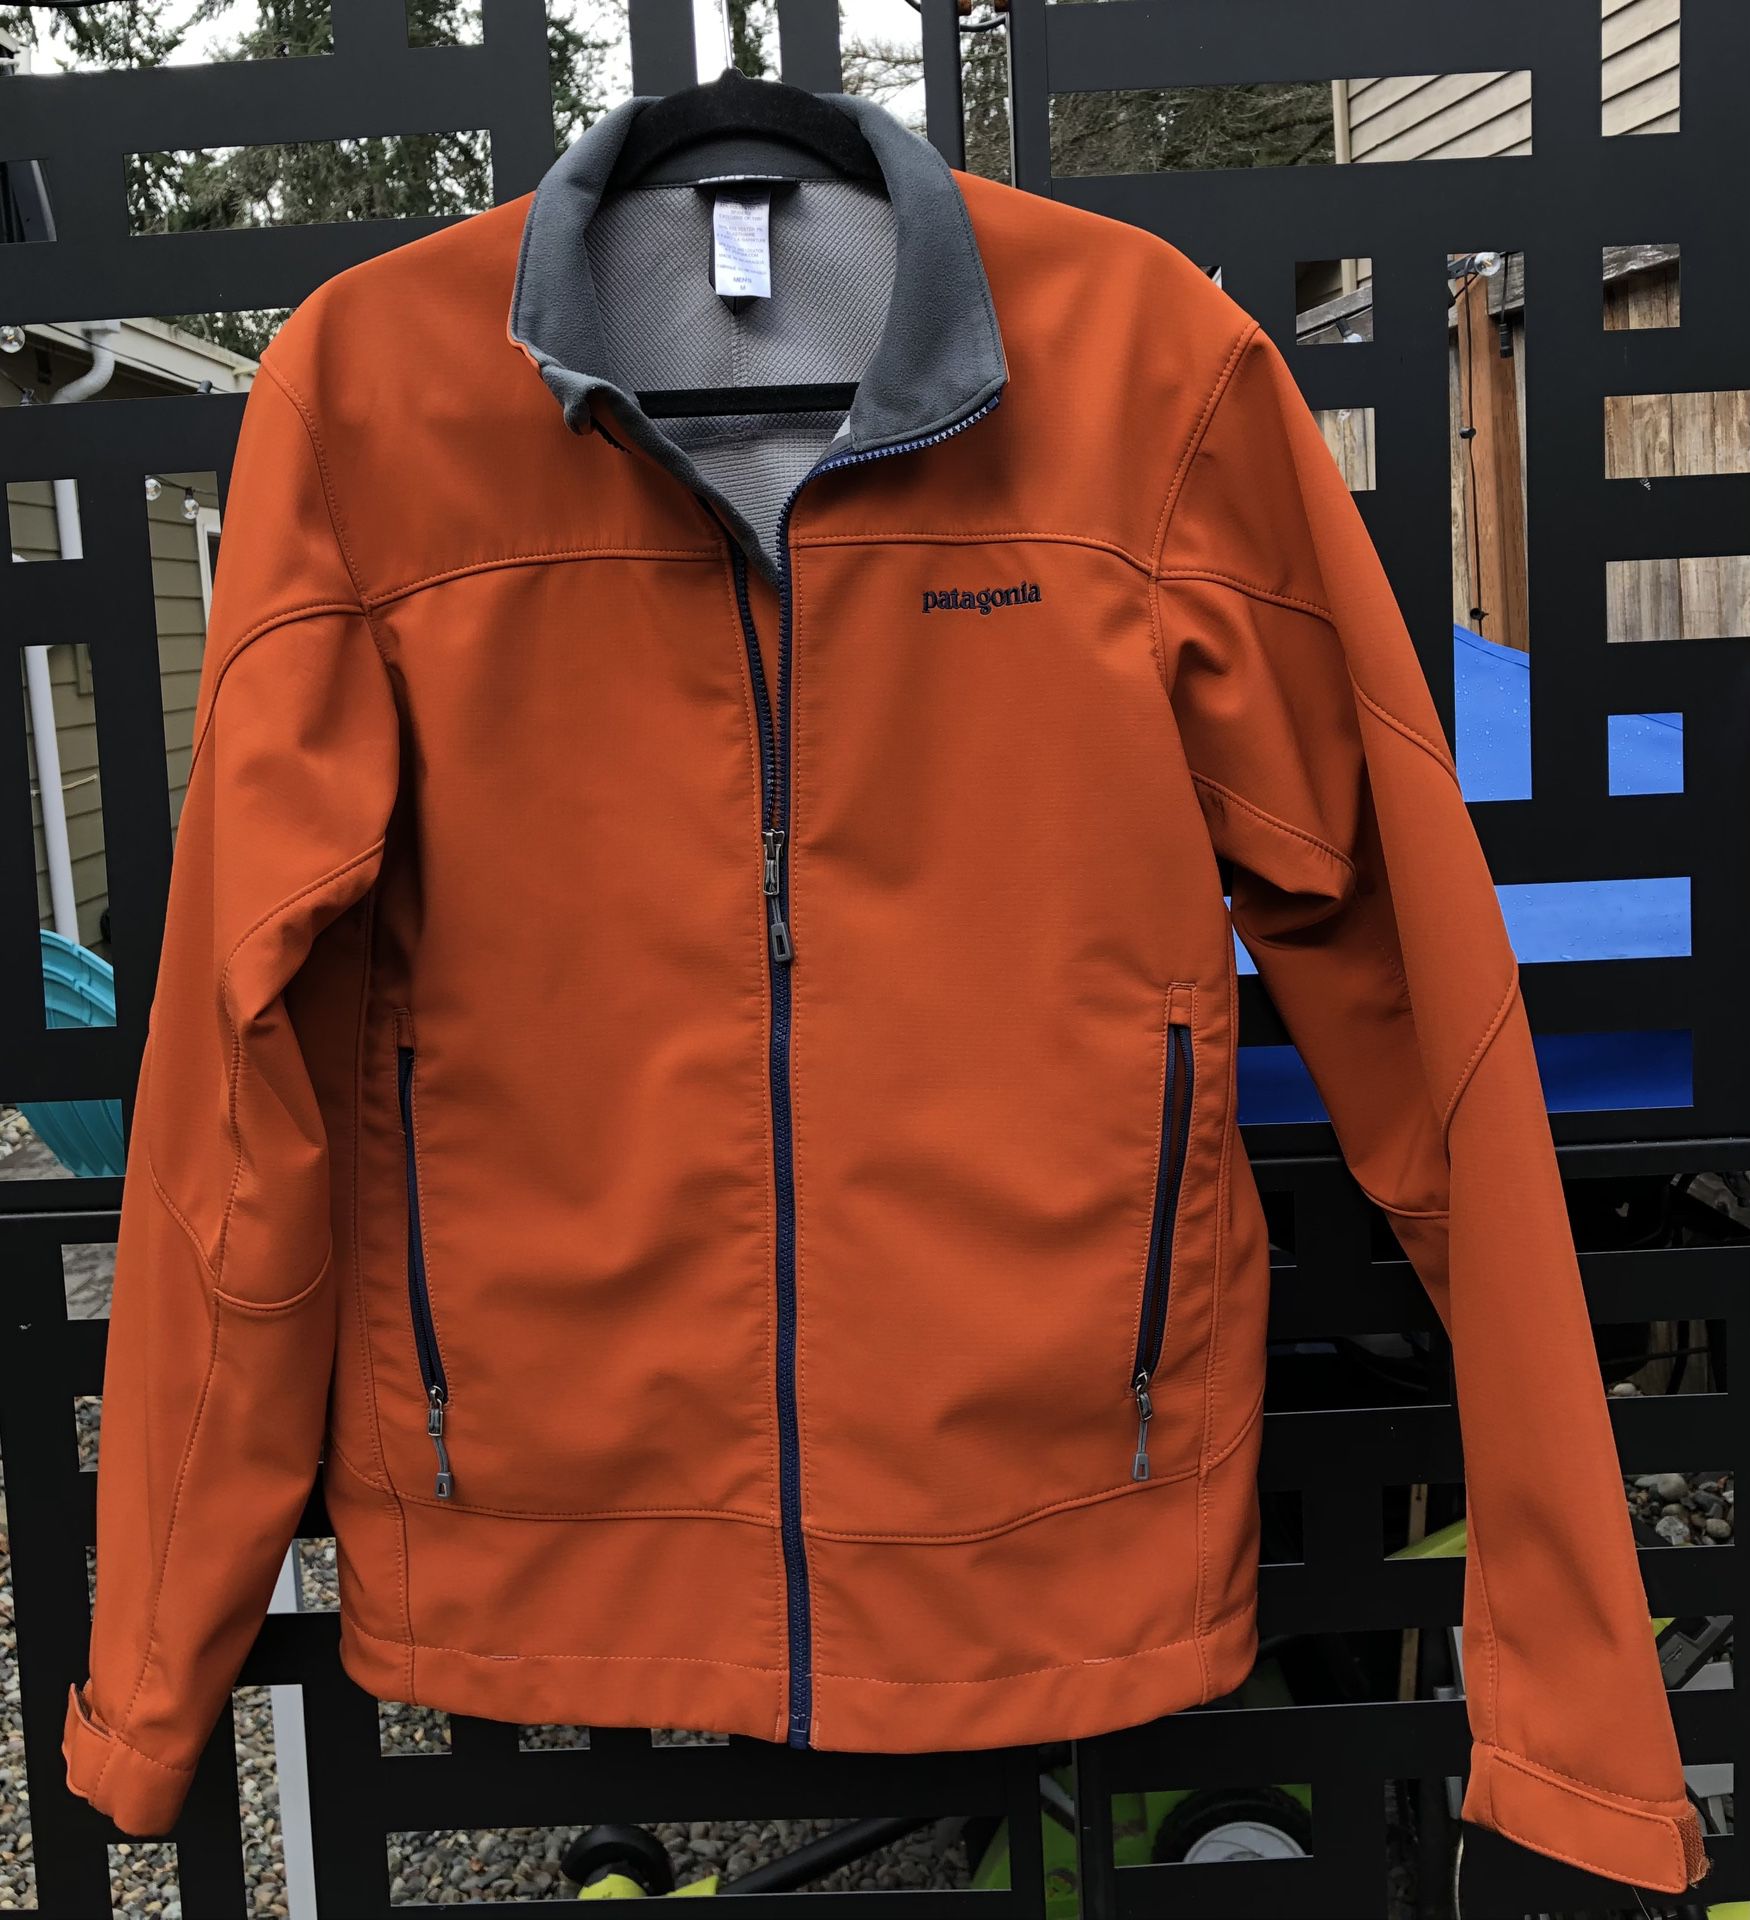 Patagonia Adze jacket 